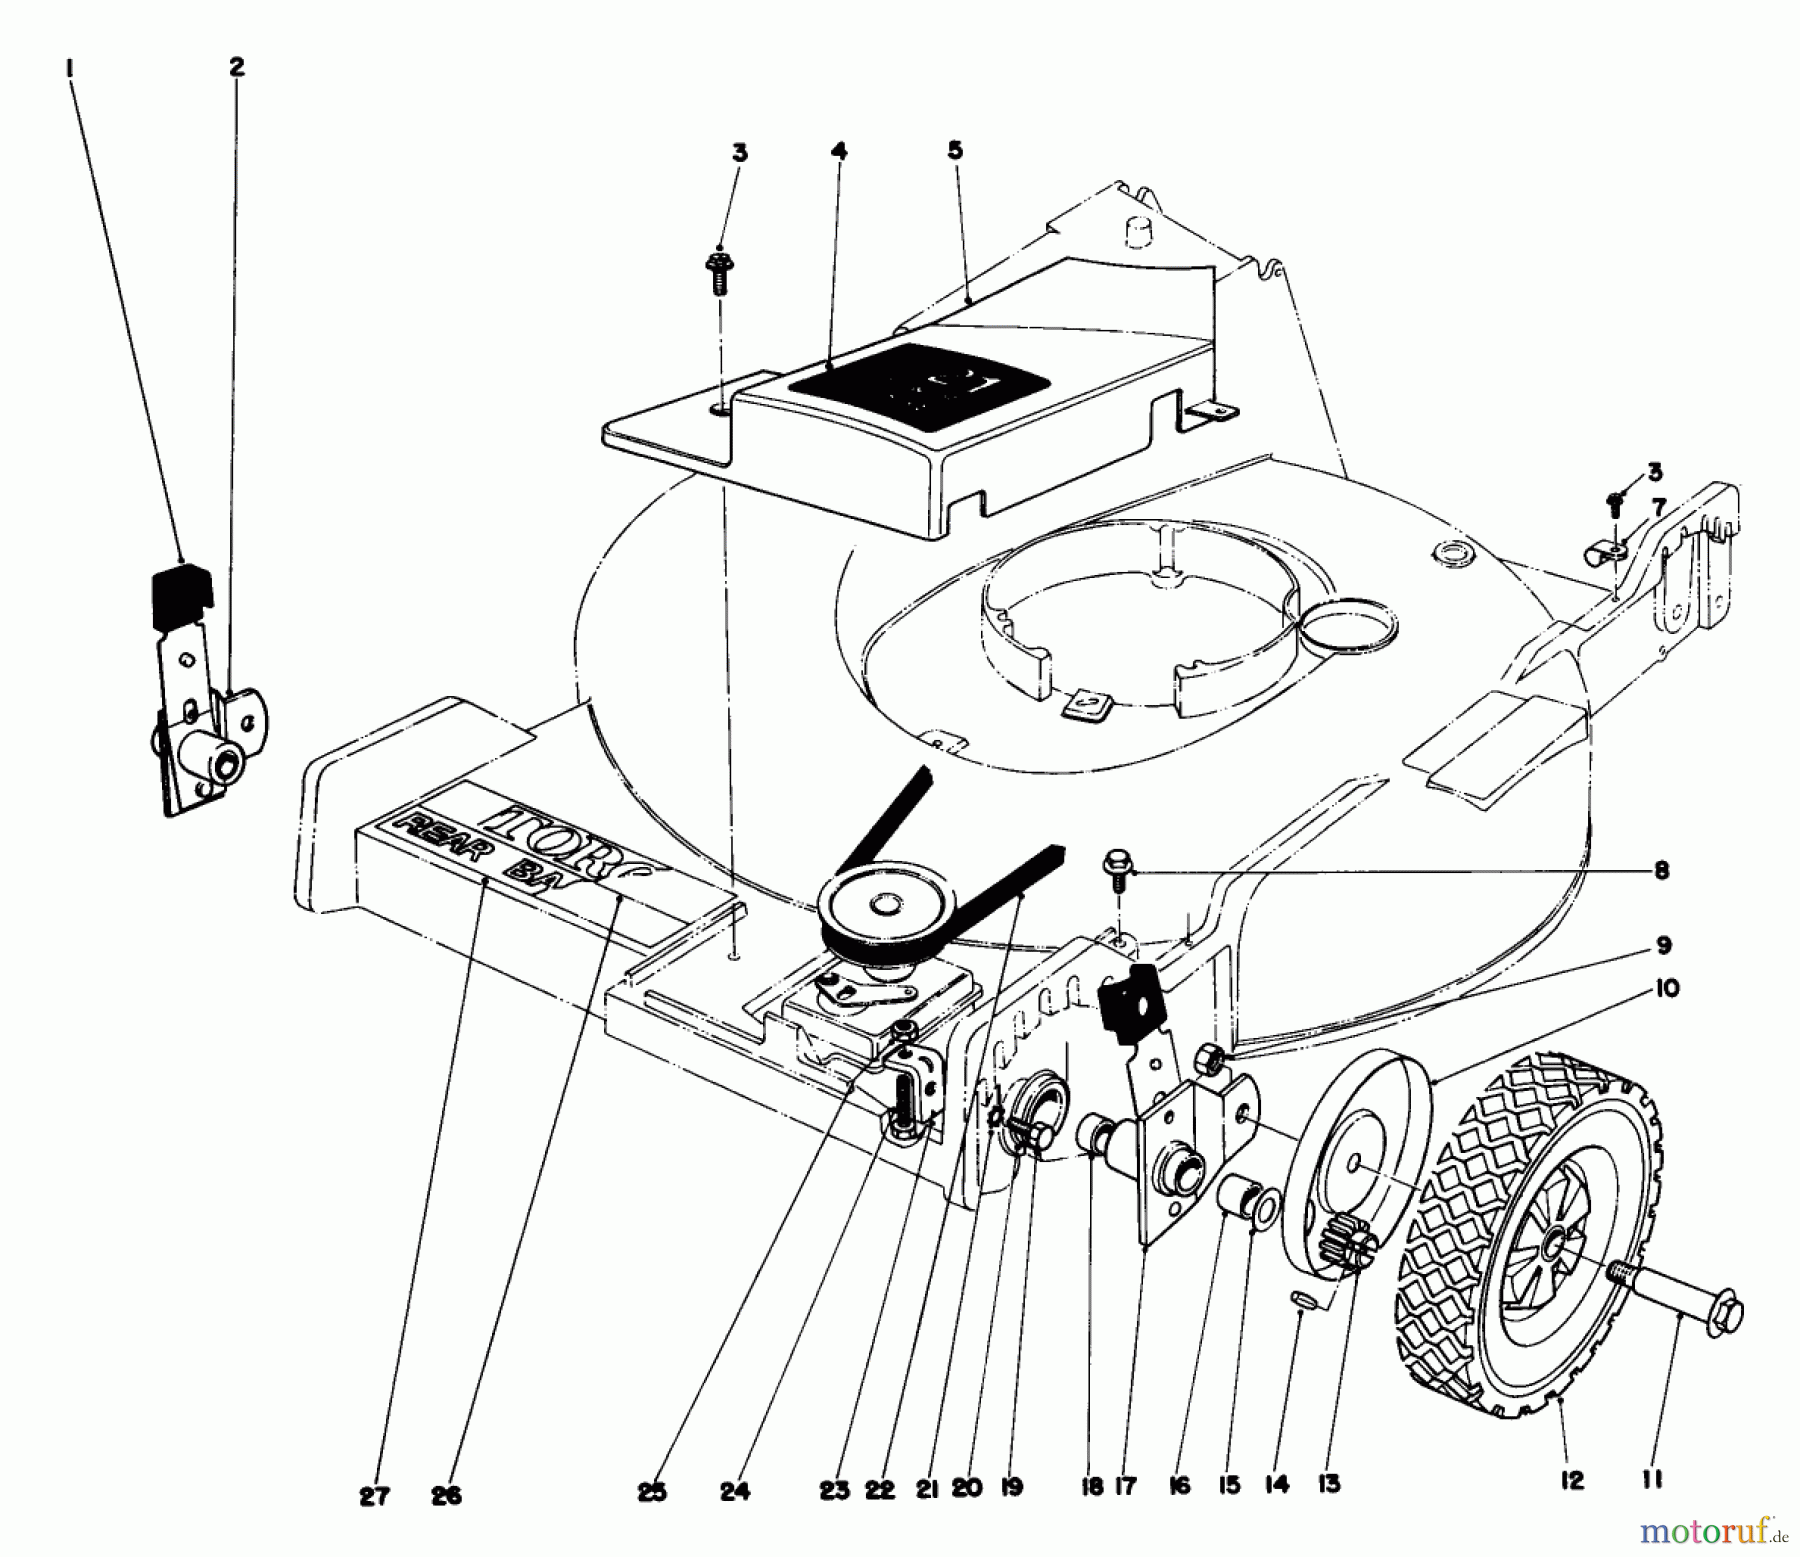  Toro Neu Mowers, Walk-Behind Seite 1 20725 - Toro Lawnmower, 1980 (0000001-0999999) FRONT WHEEL AND PIVOT ARM ASSEMBLY